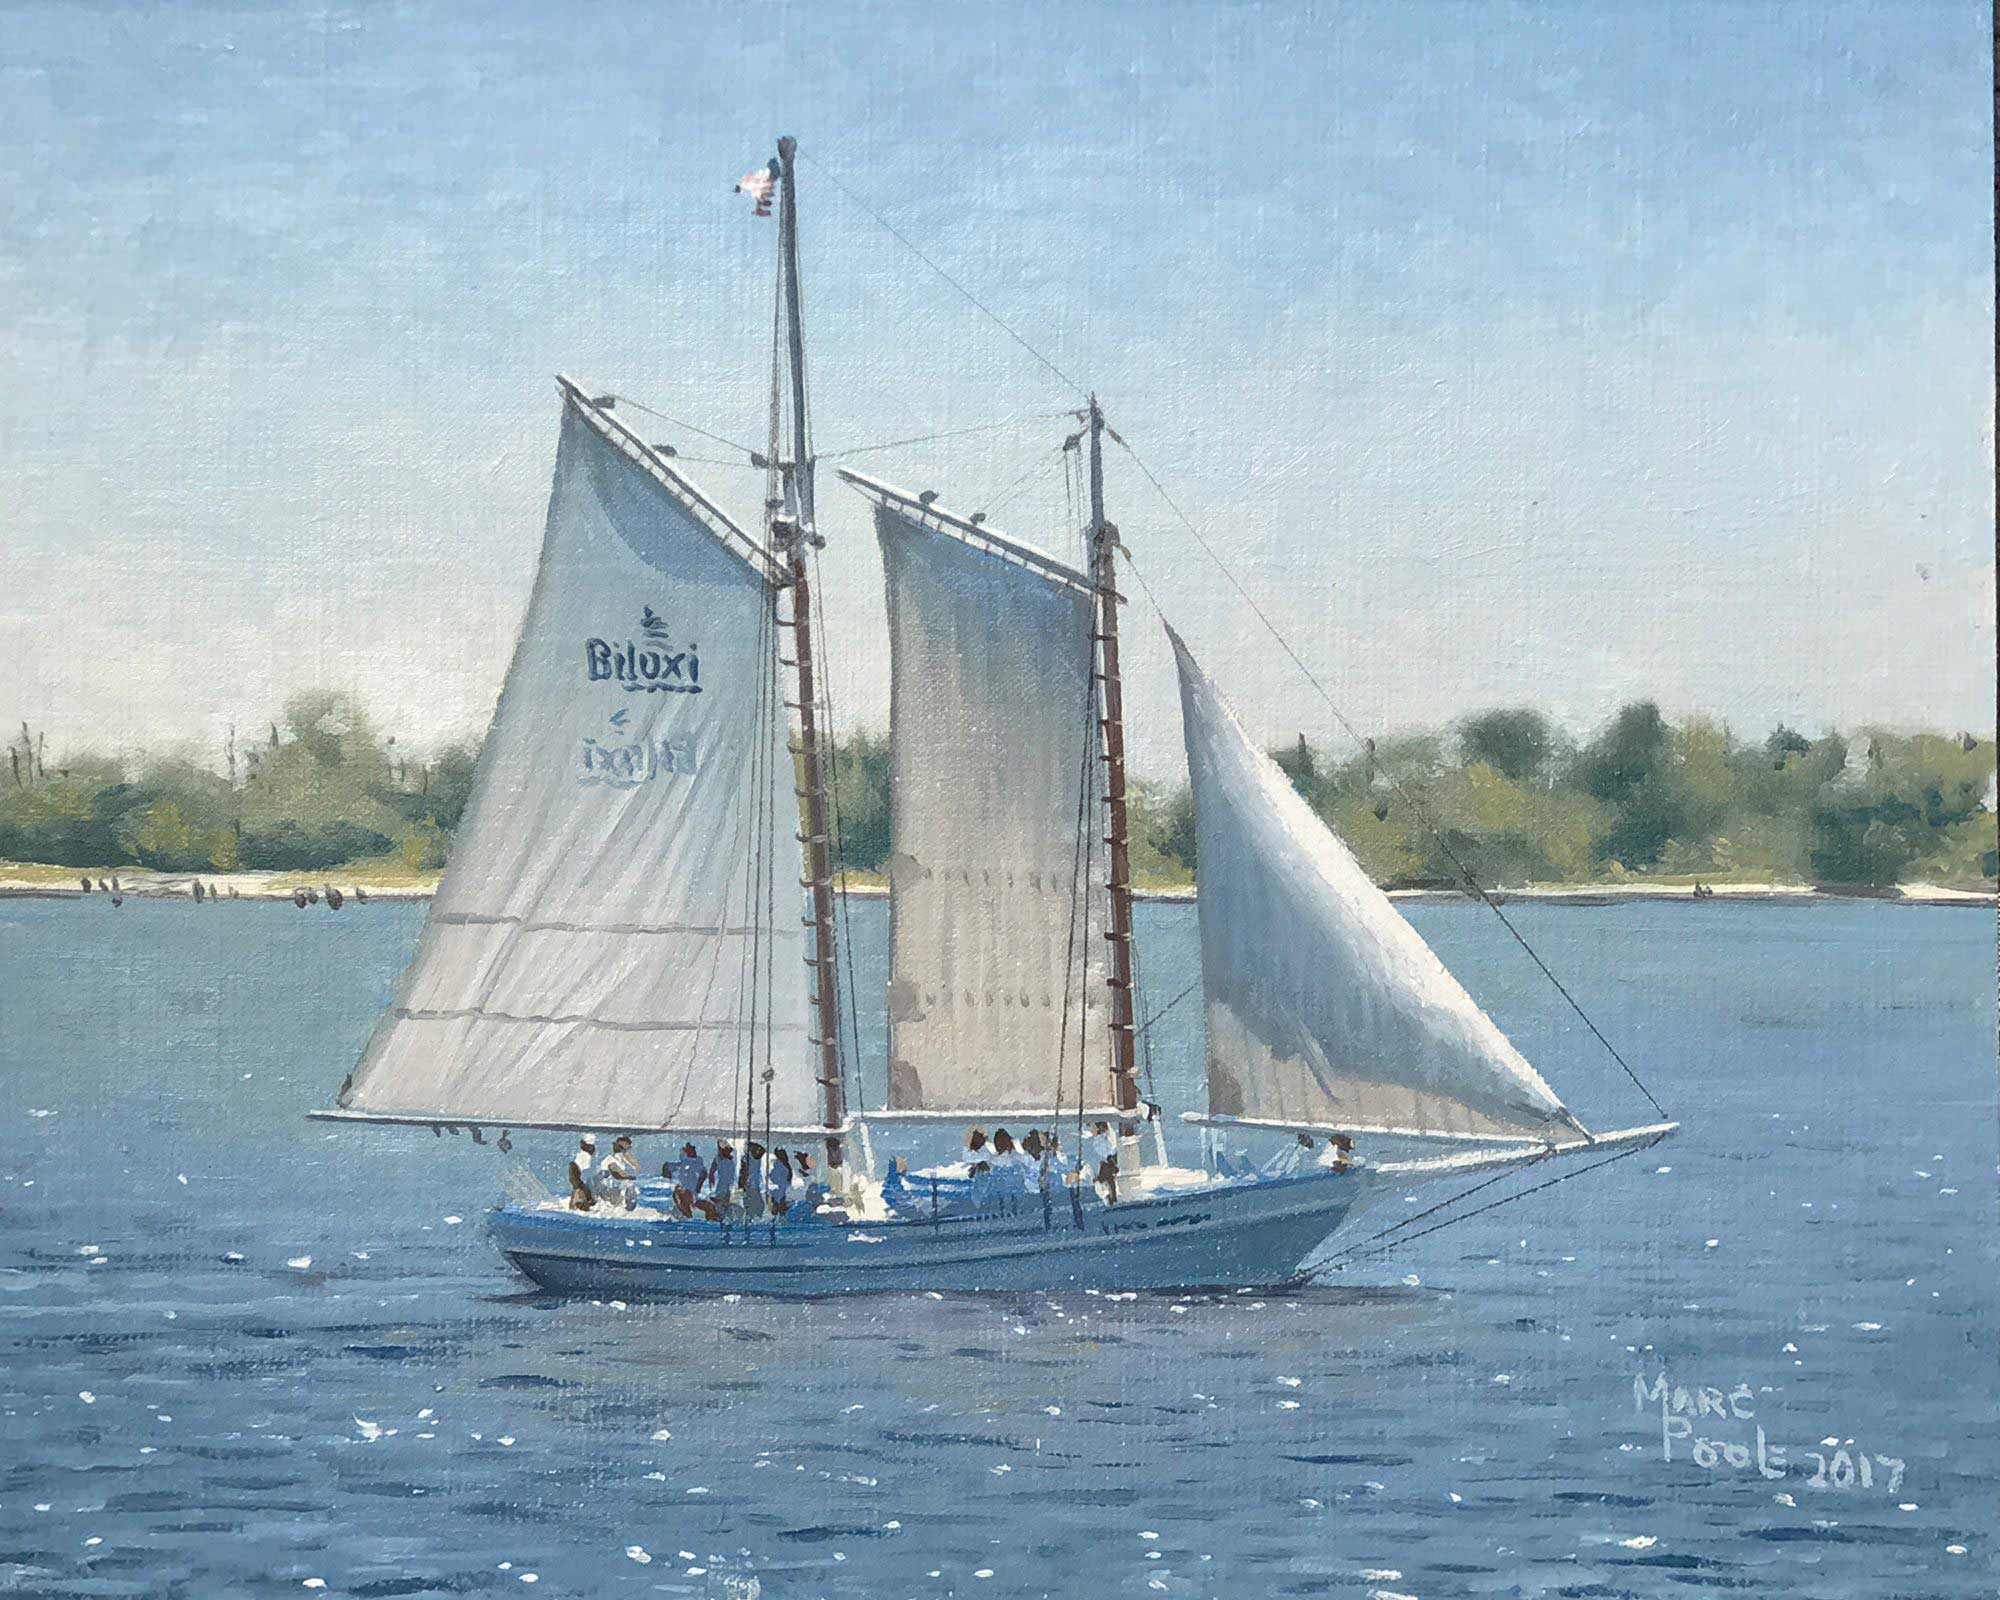 Marc Poole, Sail On